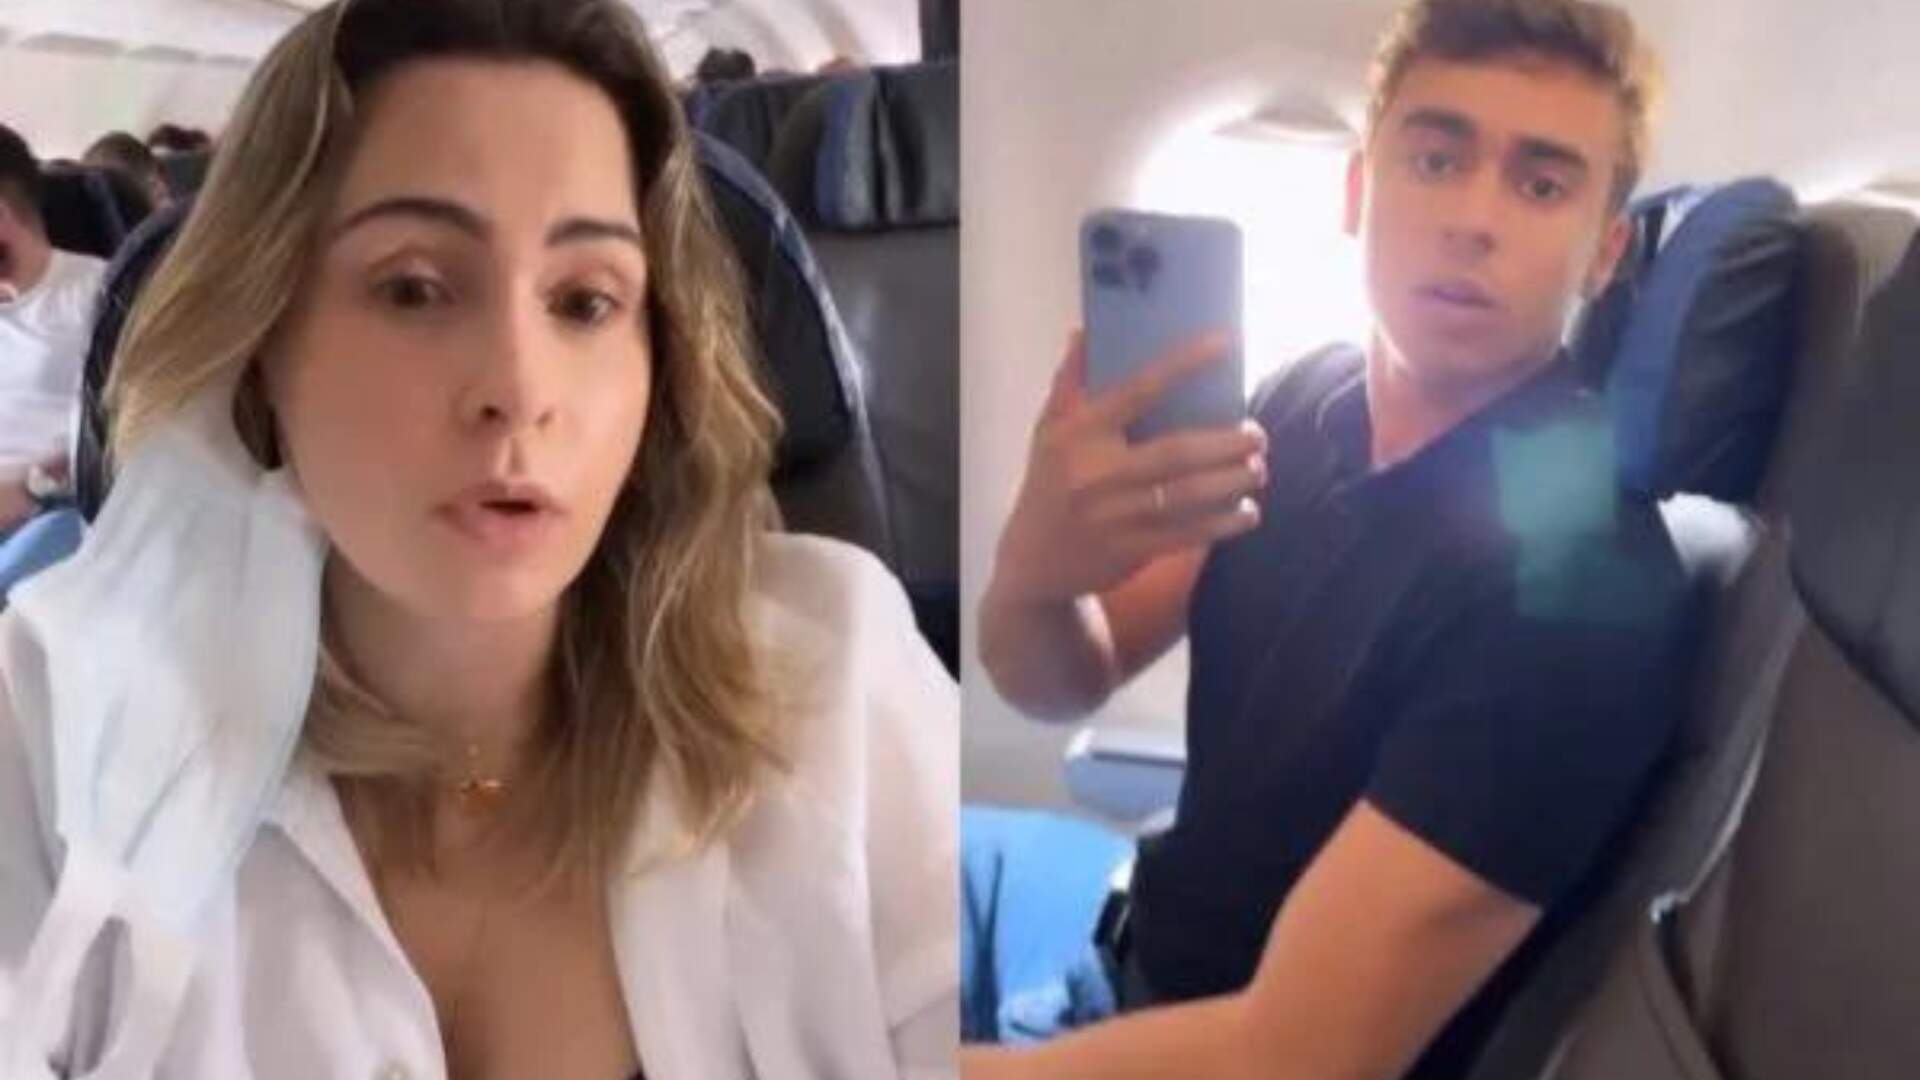 Ana Paula Renault briga com Nikolas Ferreira, Deputado Federal, no avião e causa confusão: “Crime” - Metropolitana FM